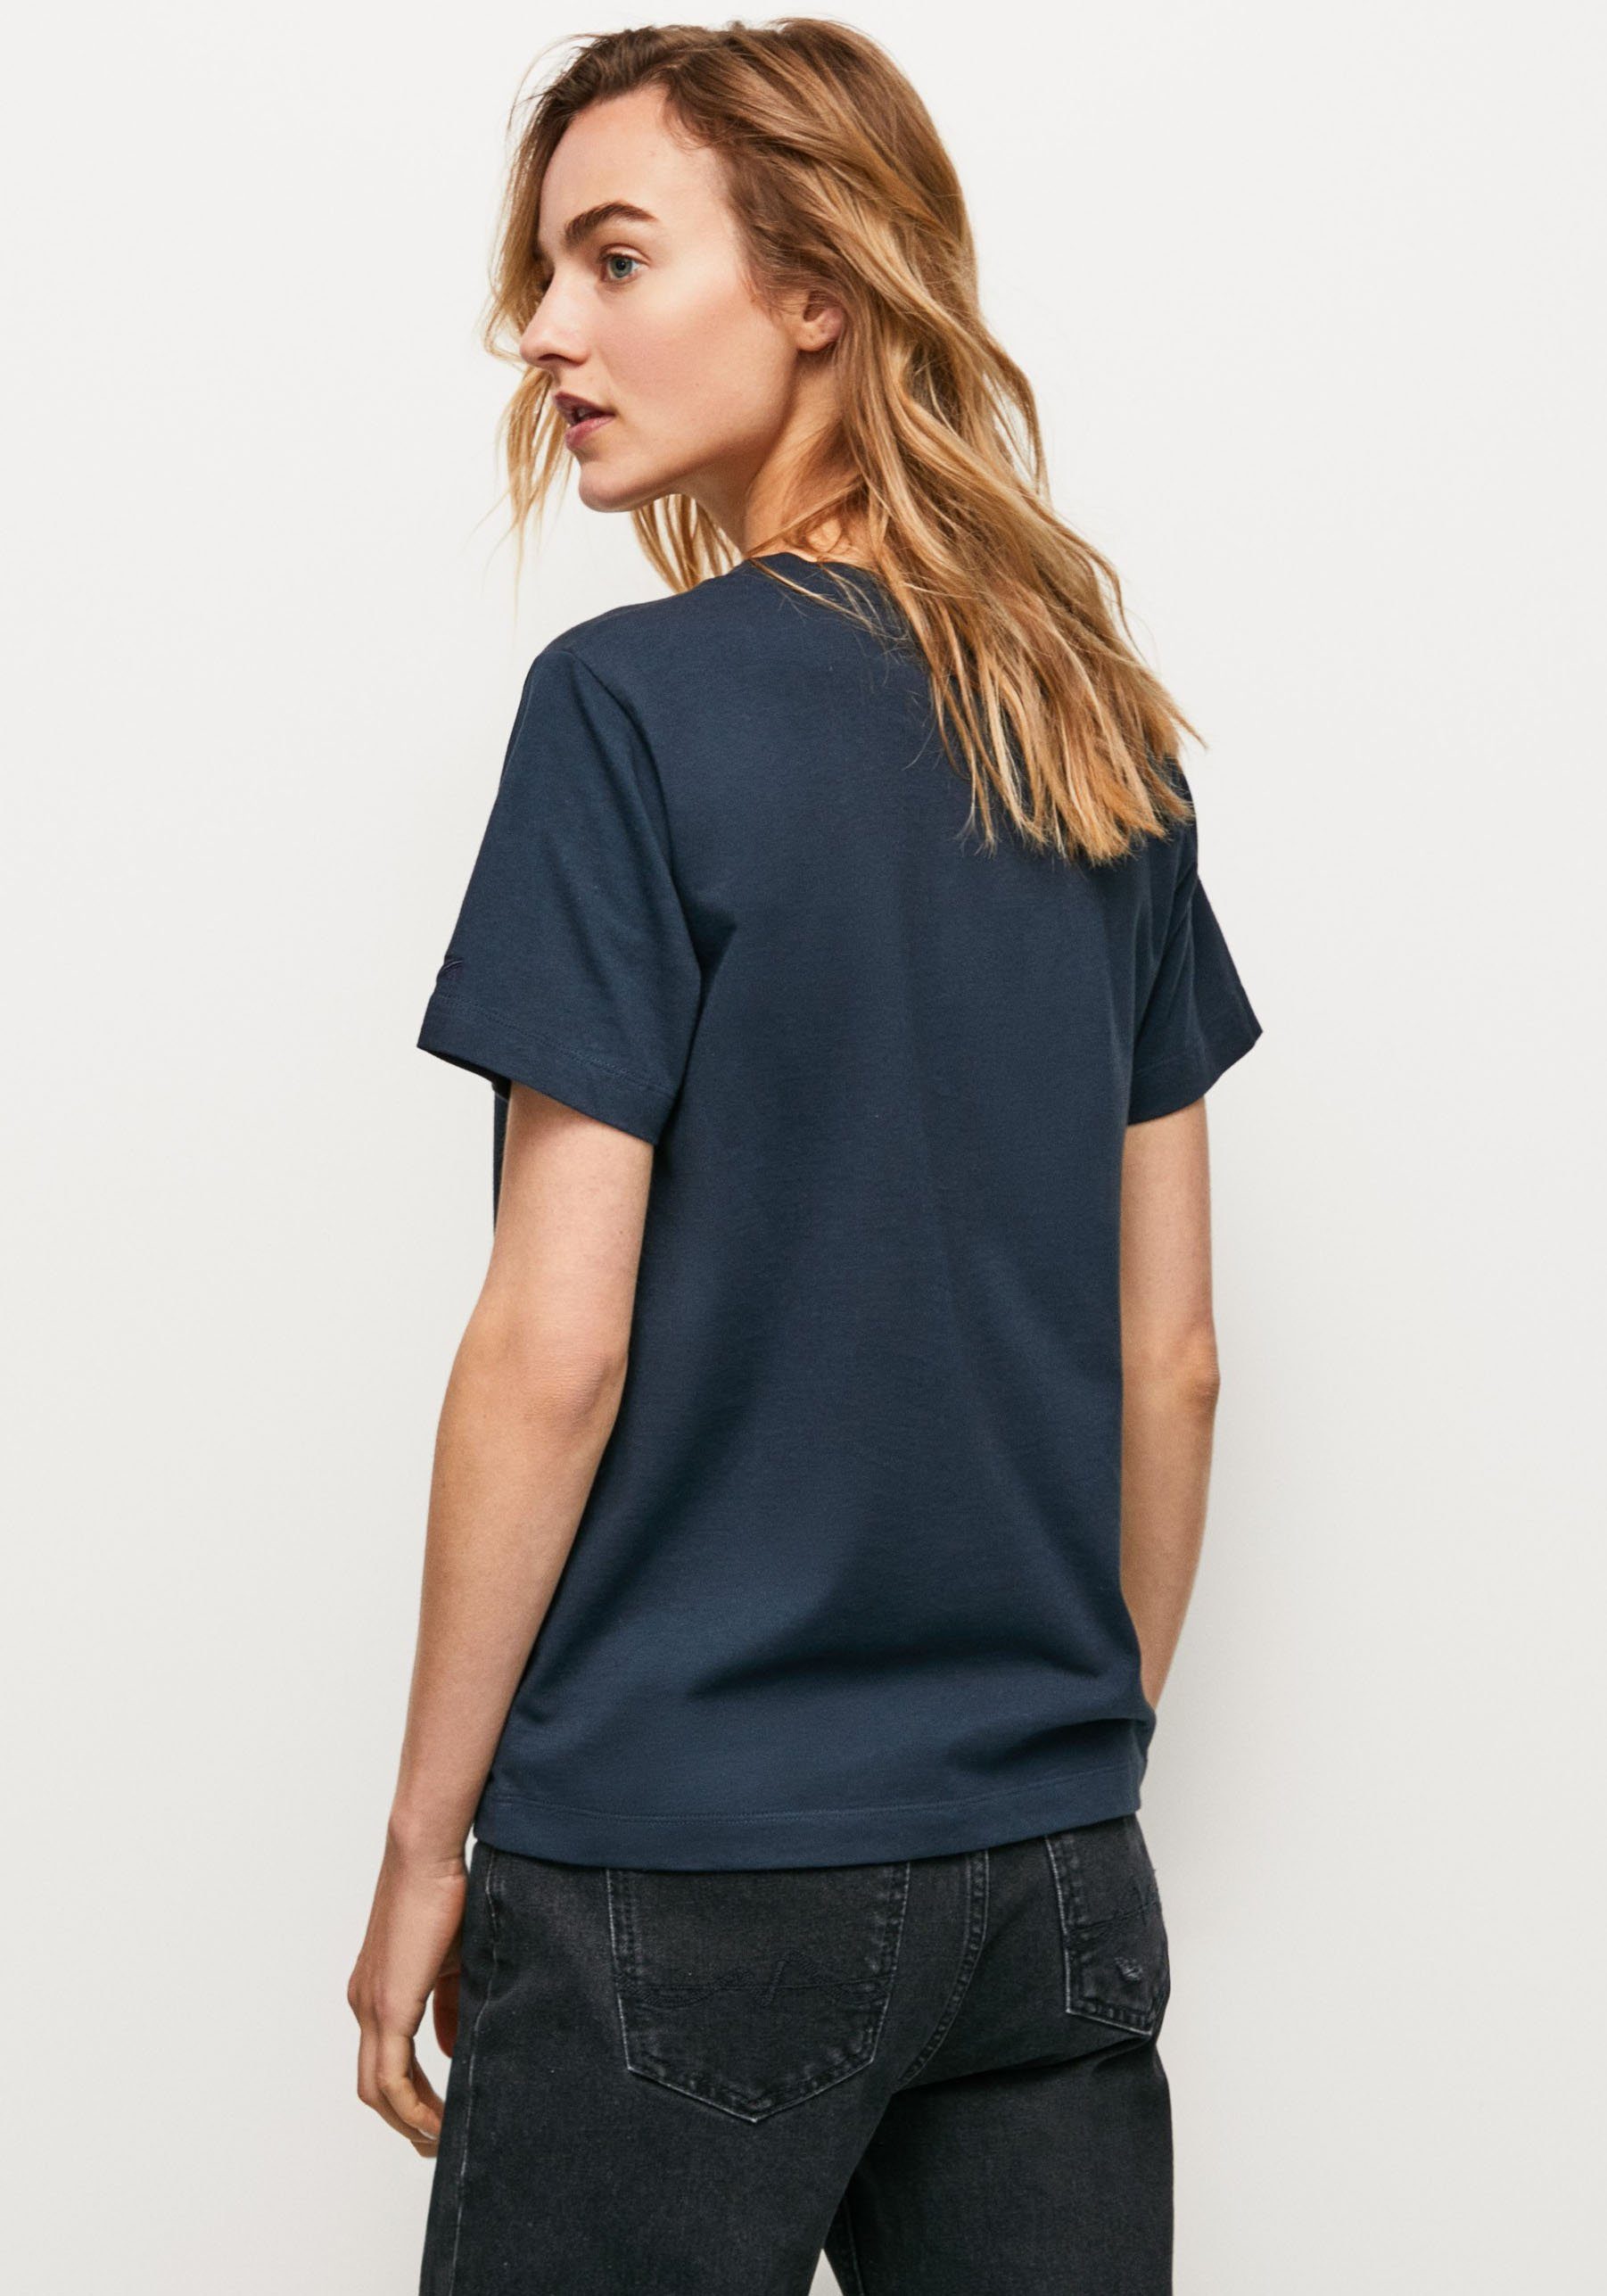 und tollem SONYA mit Frontprint 594DULWICH figurbetonter T-Shirt in markentypischem Passform Jeans Pepe